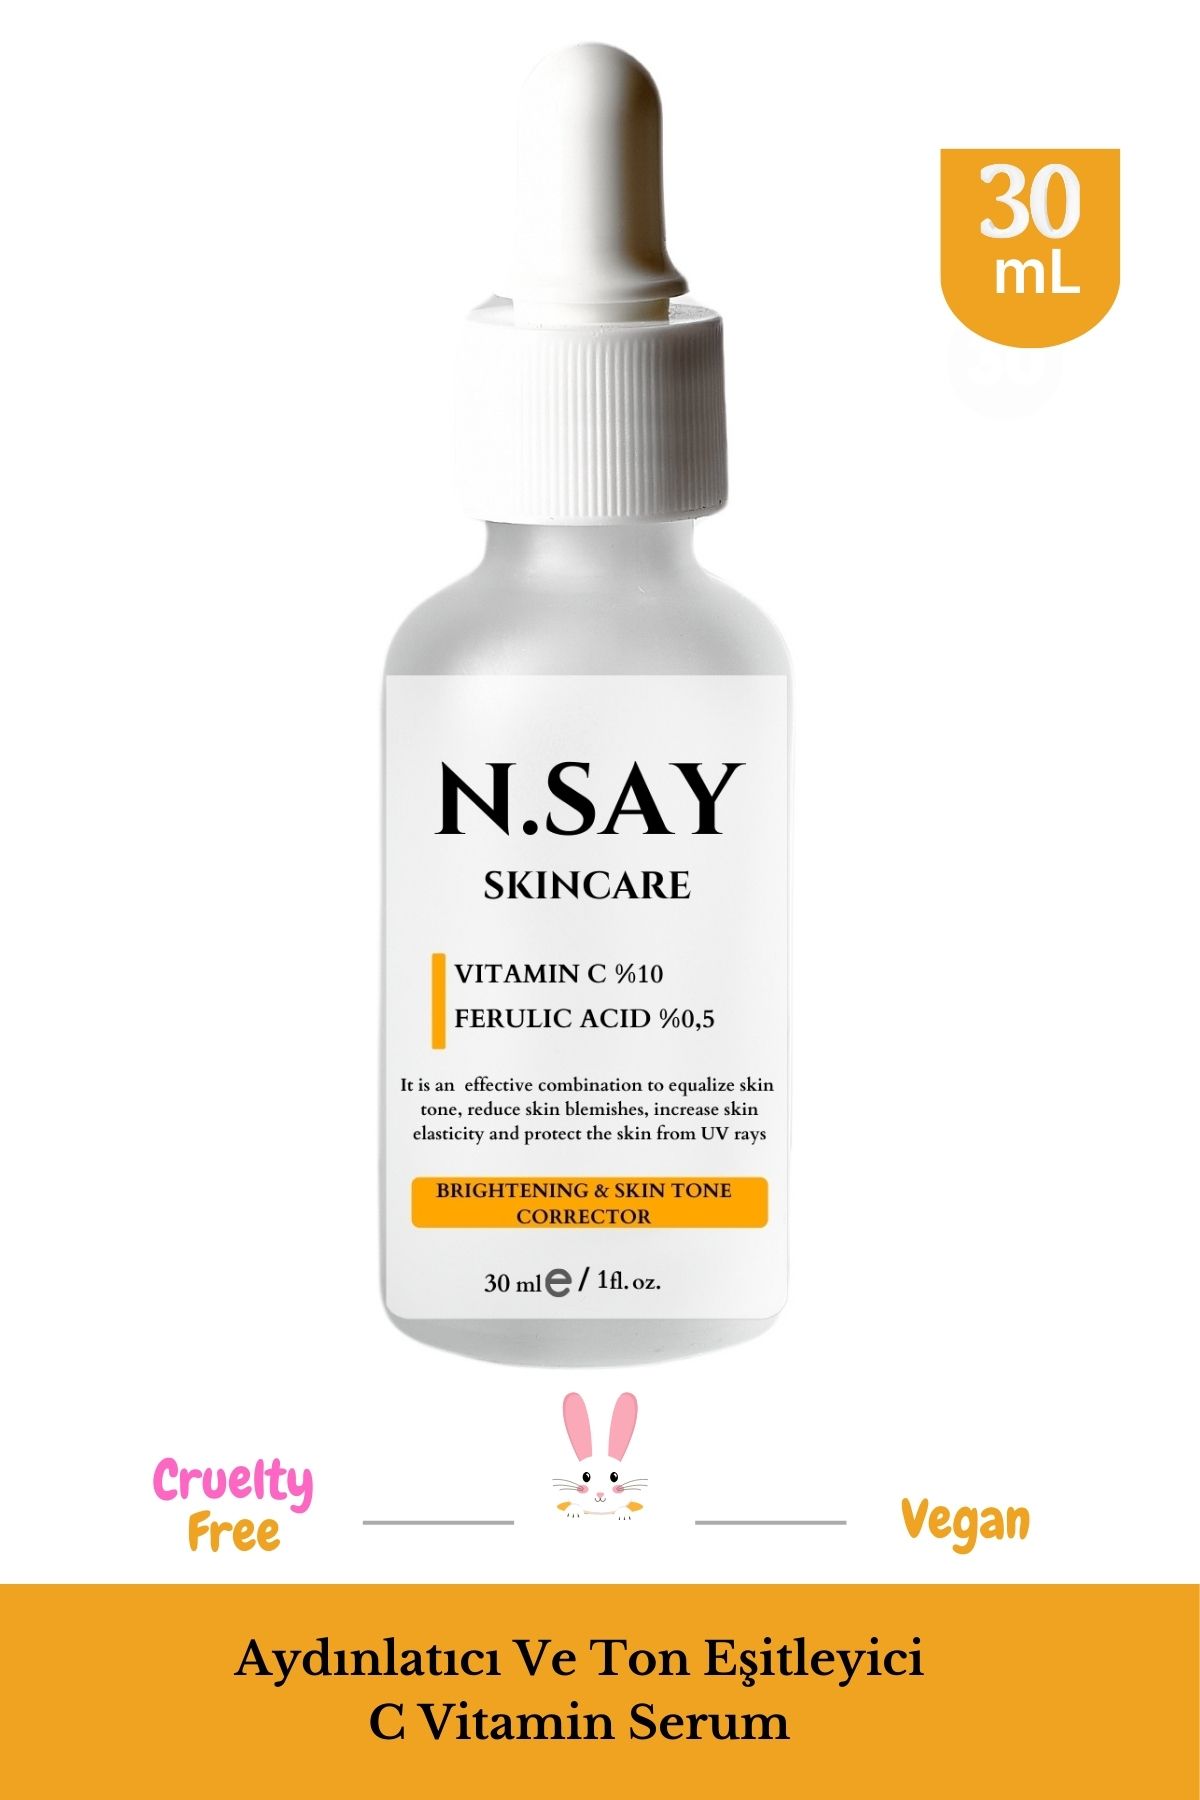 NSAY Skincare C Vitamini Aydınlatıcı Ve Ton Eşitleyici Bakım Serumu 30 ml %10 Ascorbic Acid & Ferulic Acid %0,5